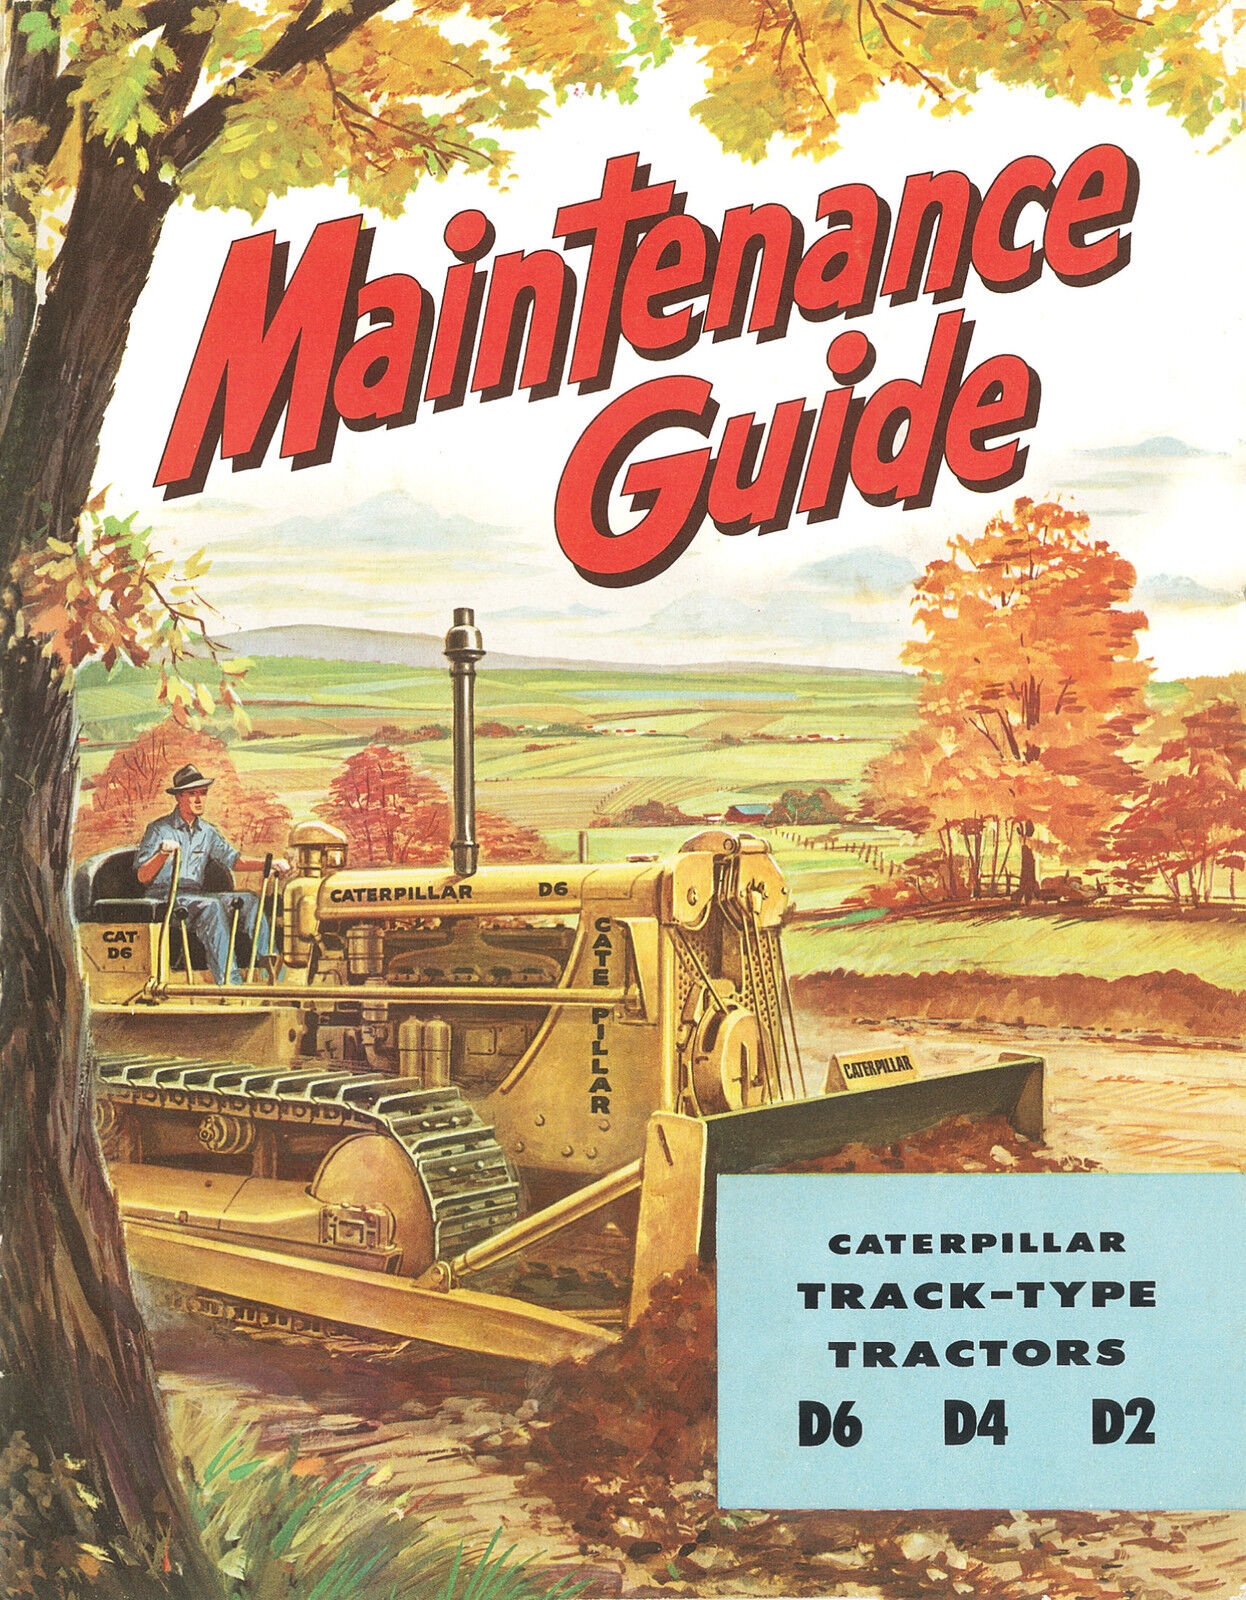 Caterpillar Maintenance Guide D6 D4 D2 Booklet 1950s